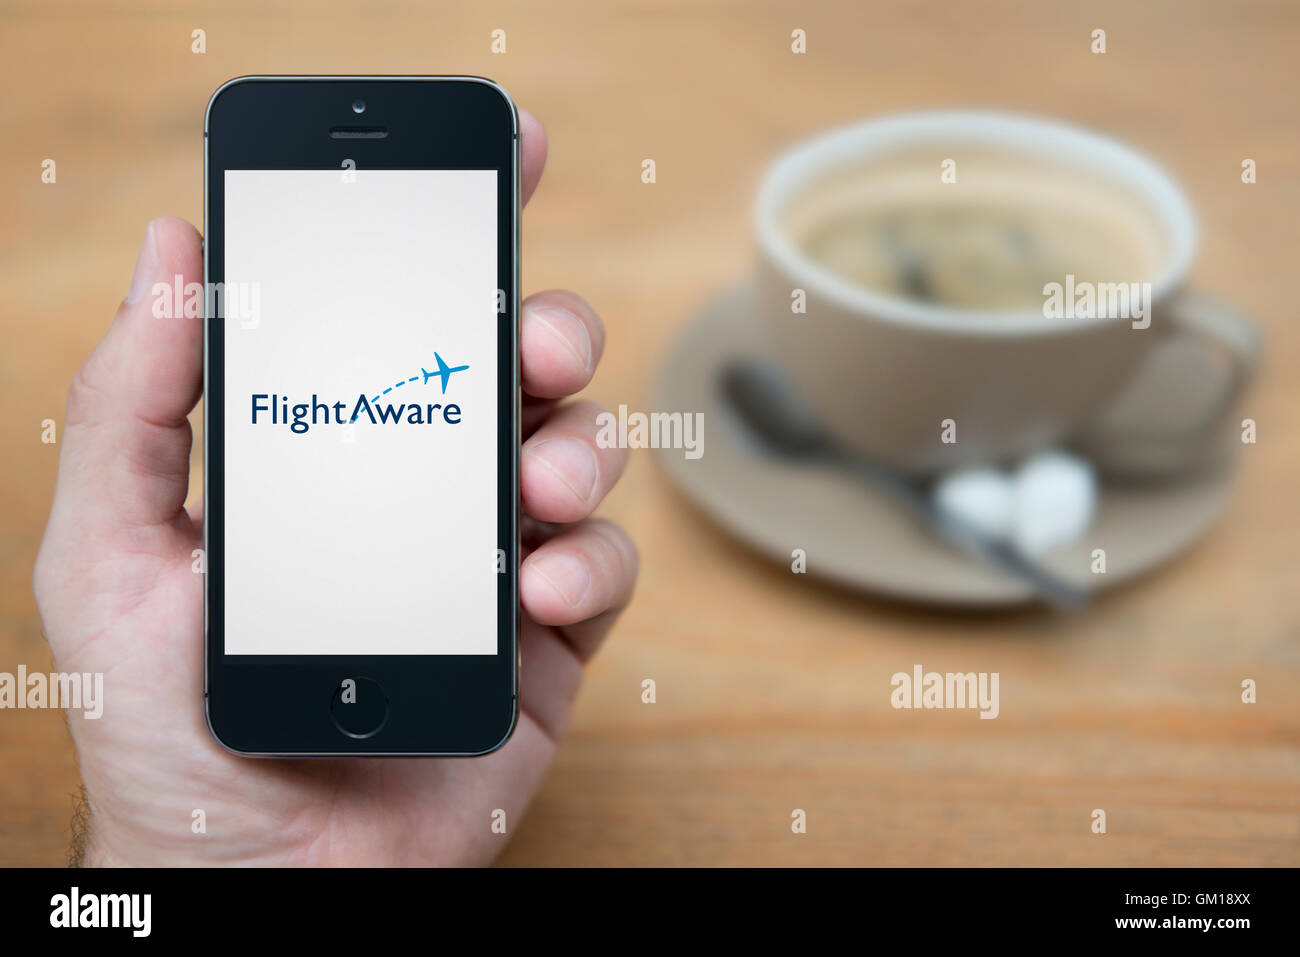 Un uomo guarda al suo iPhone che visualizza il volo consapevole logo, mentre sat con una tazza di caffè (solo uso editoriale). Foto Stock